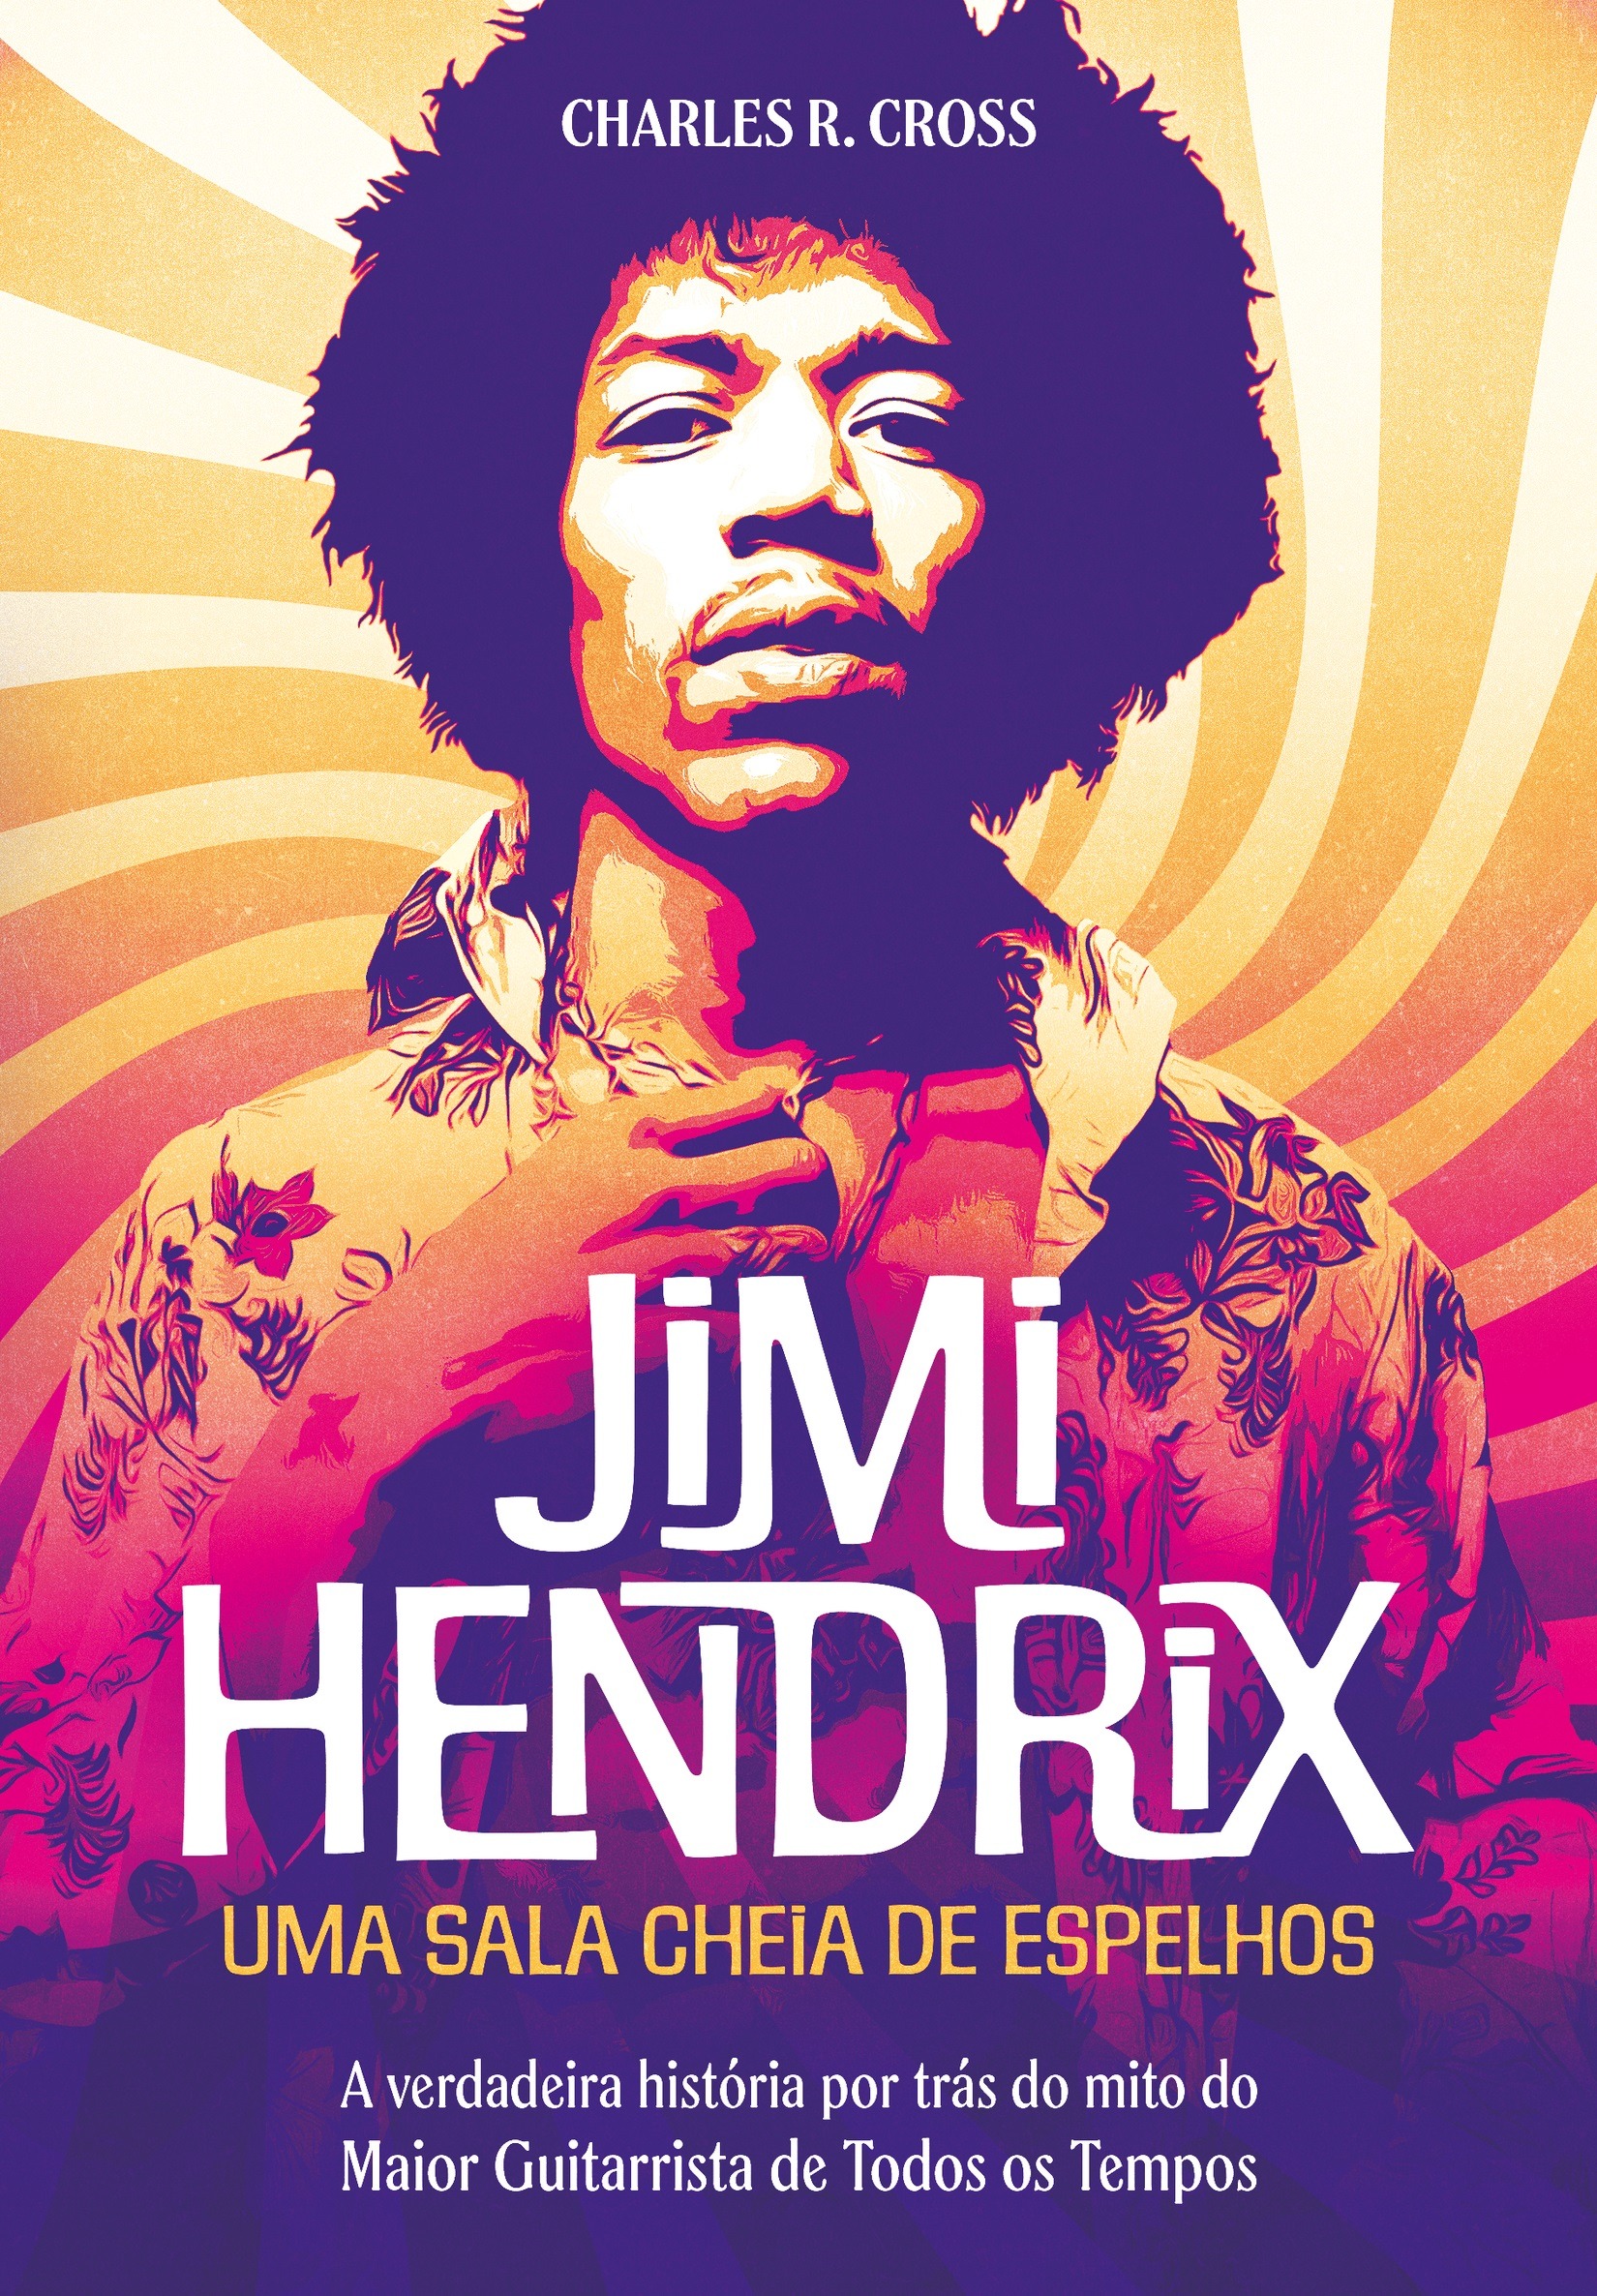 No ano em que completaria 80 anos, biografia de Jimi Hendrix traz relatos inéditos sobre sua vida e obra